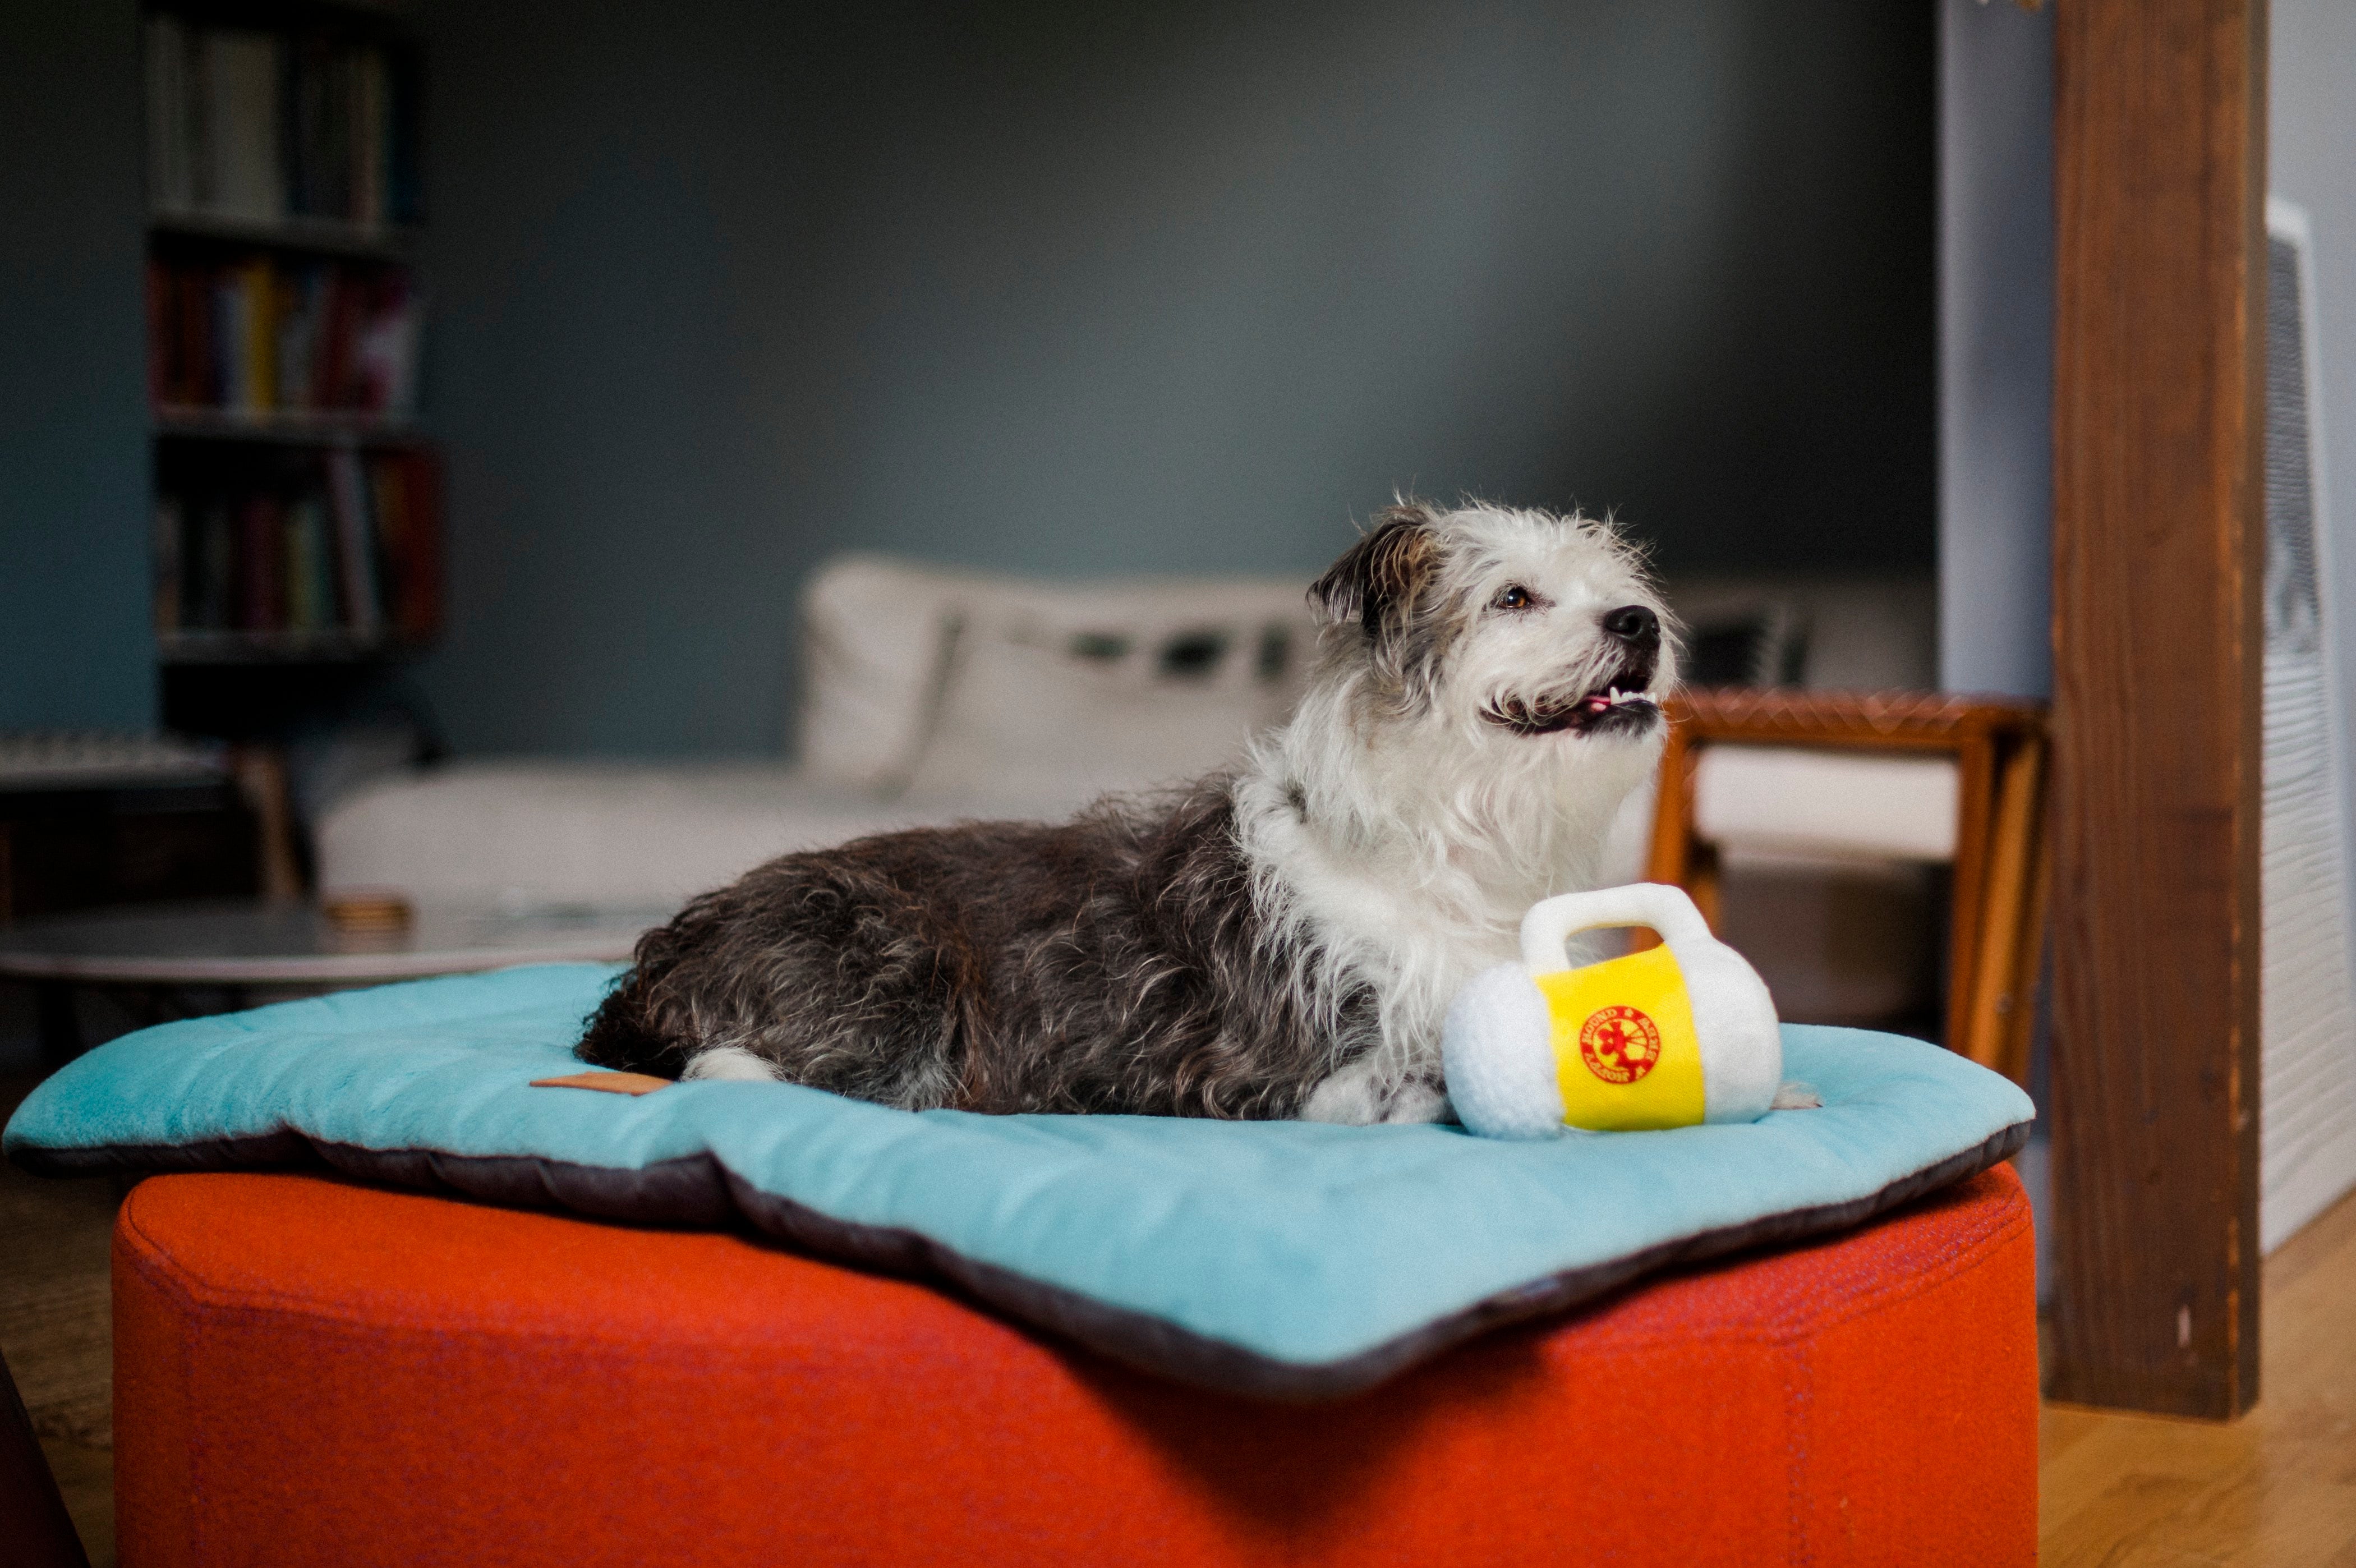 Hollywoof Cinema Squeaky Plush Dog toys, Bundle